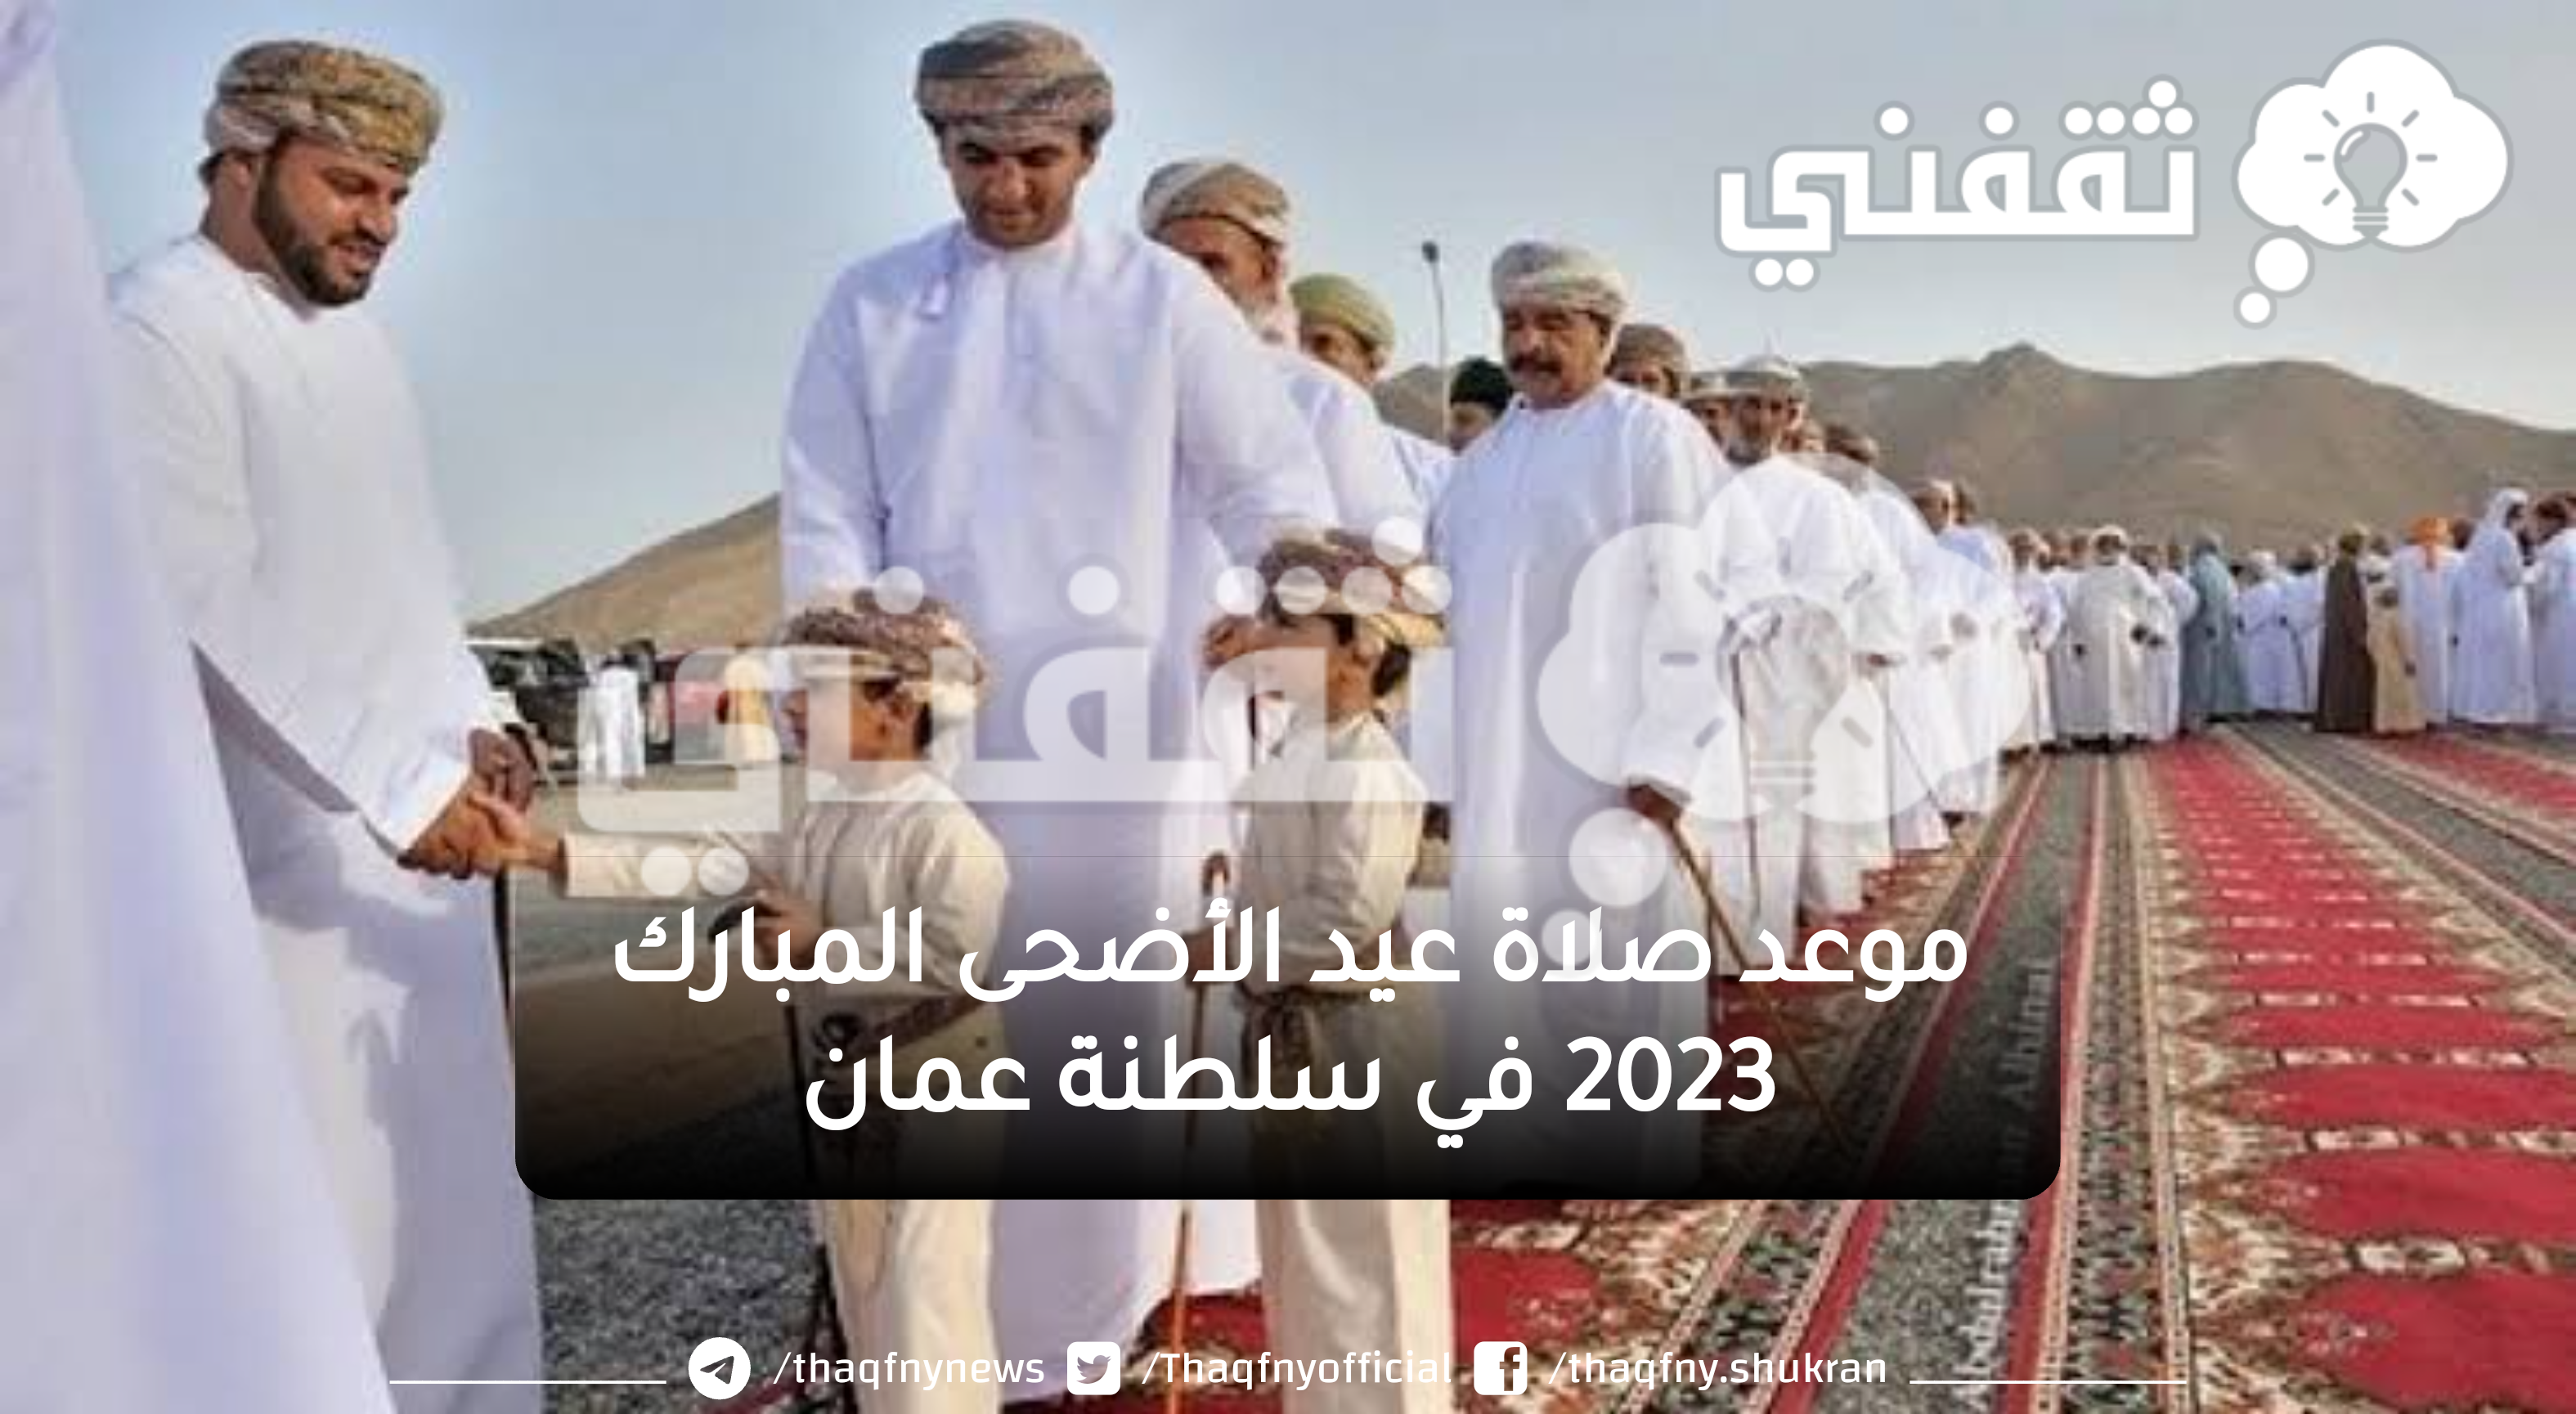 موعد صلاة عيد الأضحى المبارك 2023 في سلطنة عمان والإمارات| توقيت صلاة العيد في مسقط ودبي وأبو ظبي وجميع المحافظات